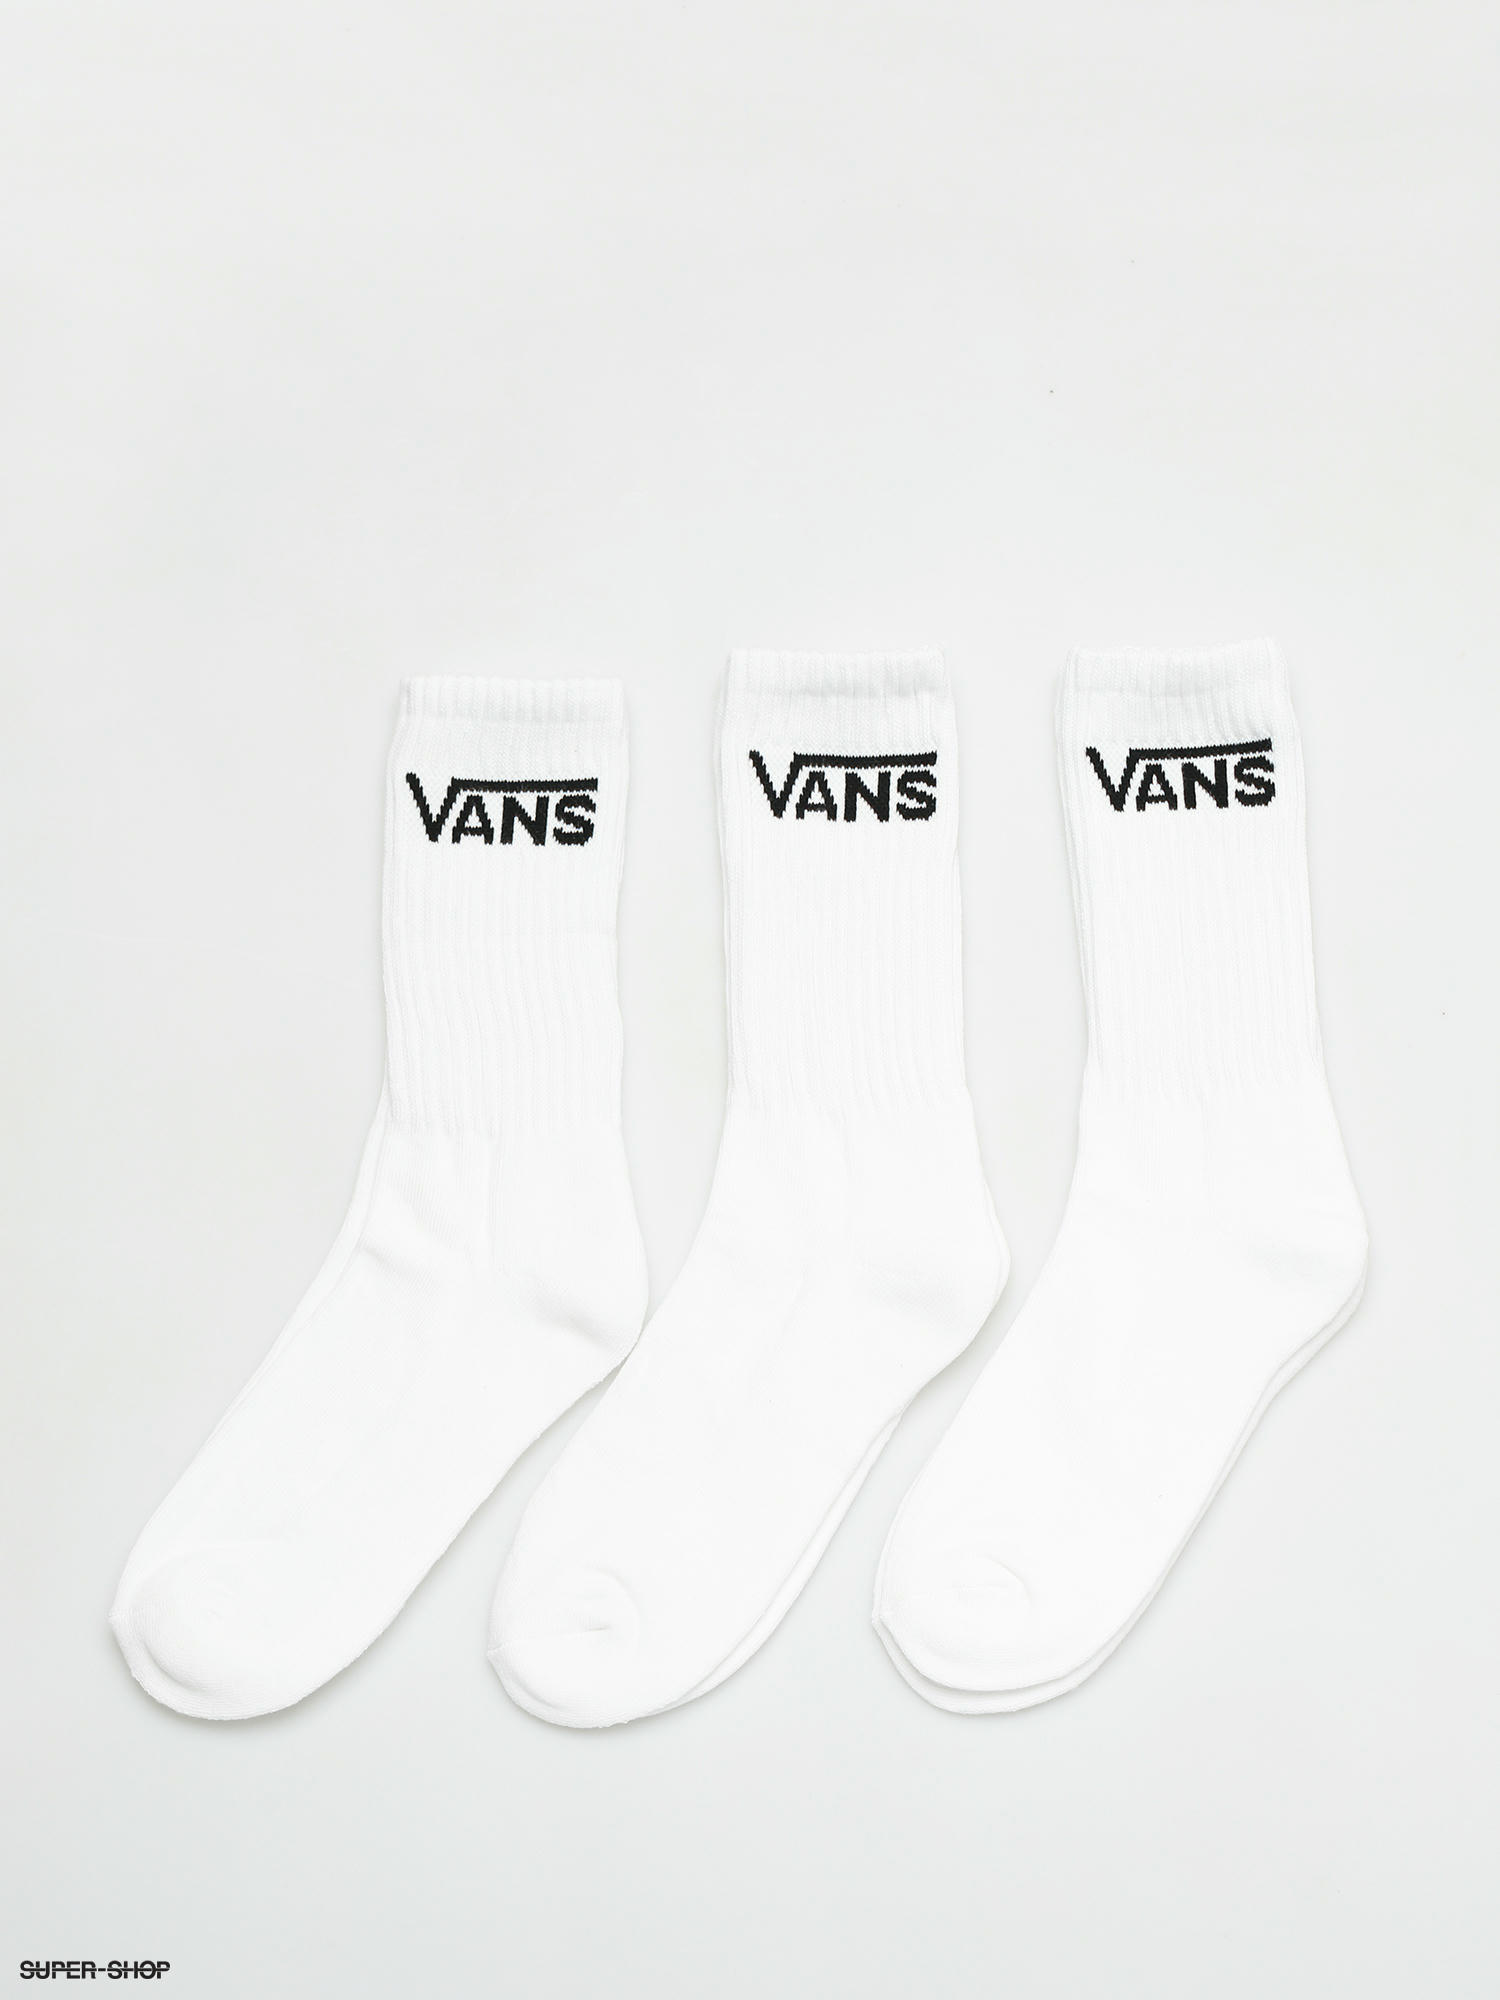 vans and socks